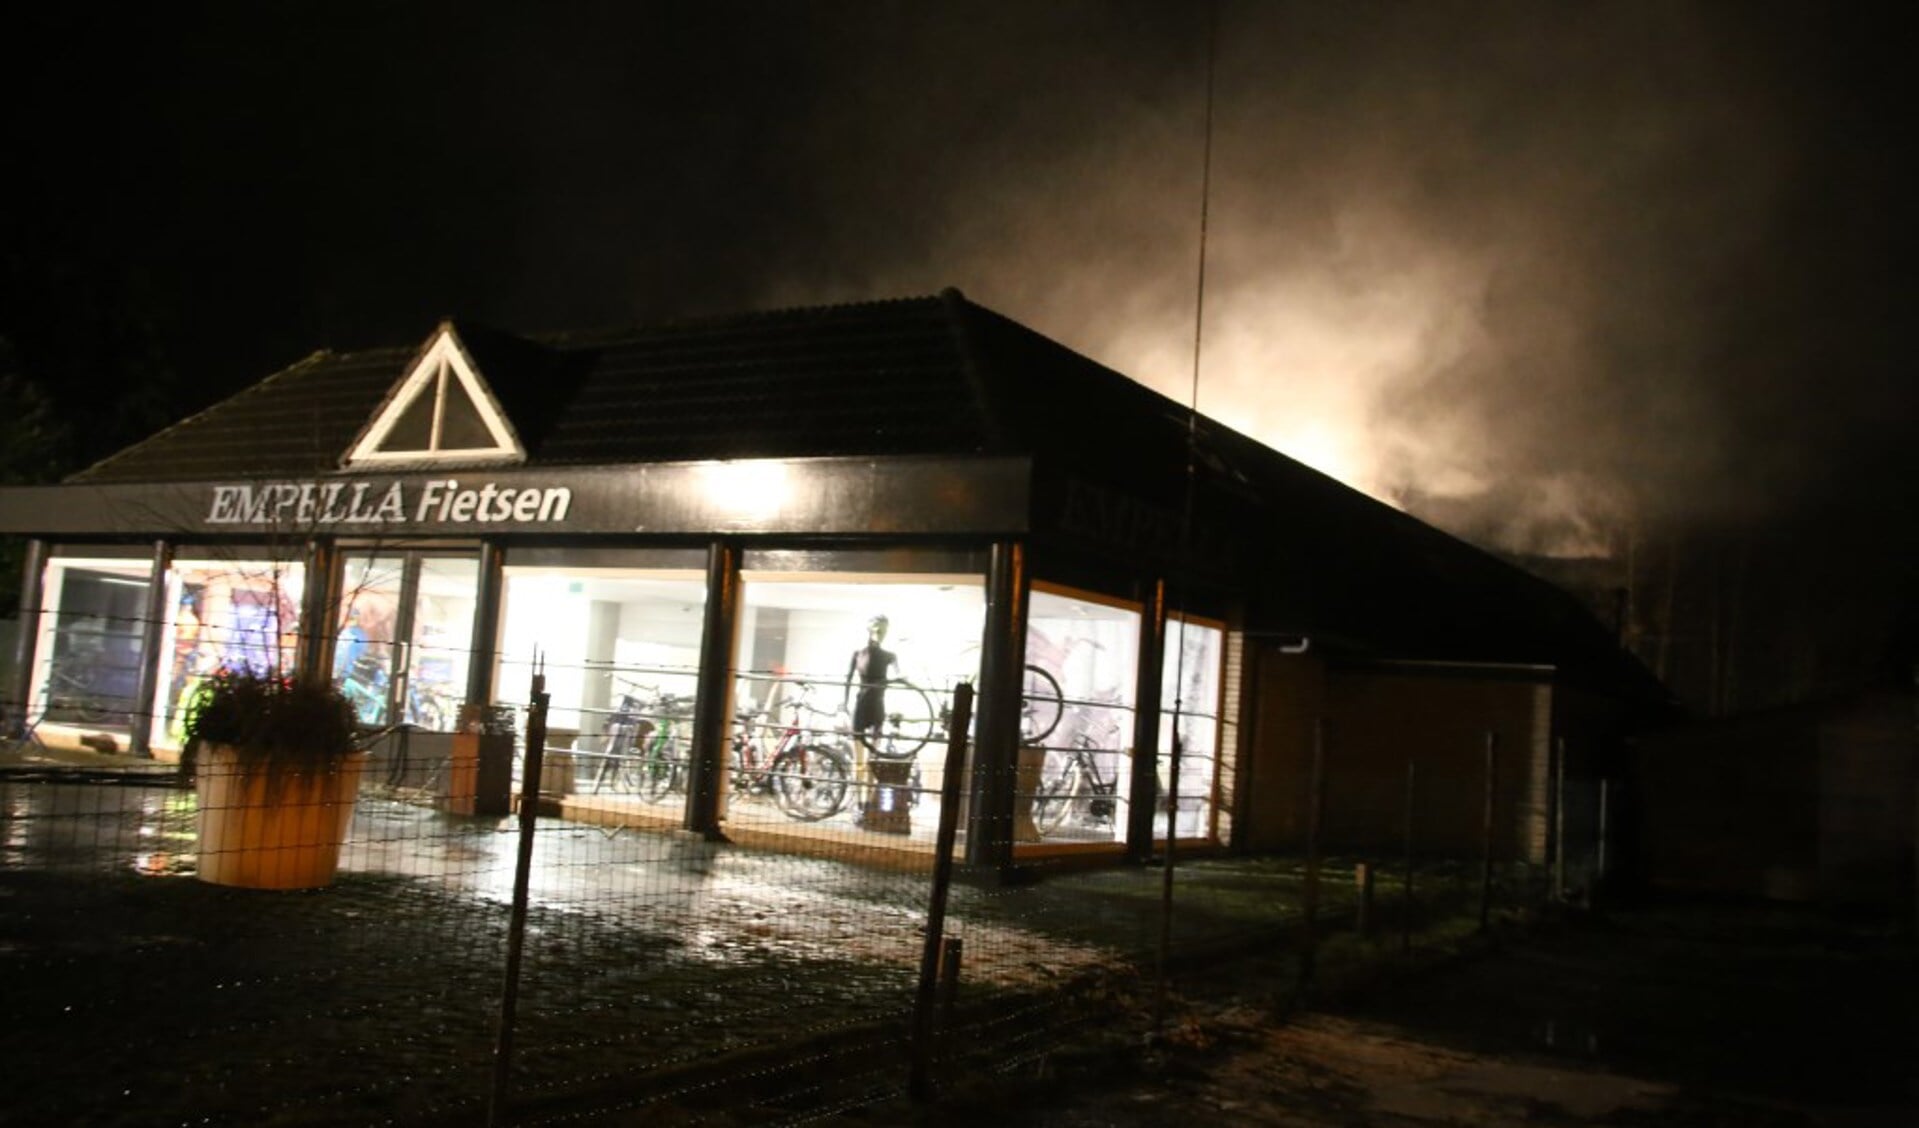 Empella in Uden is gesloten als gevolg van een brand in de fietsenwinkel op donderdagavond 12 januari.